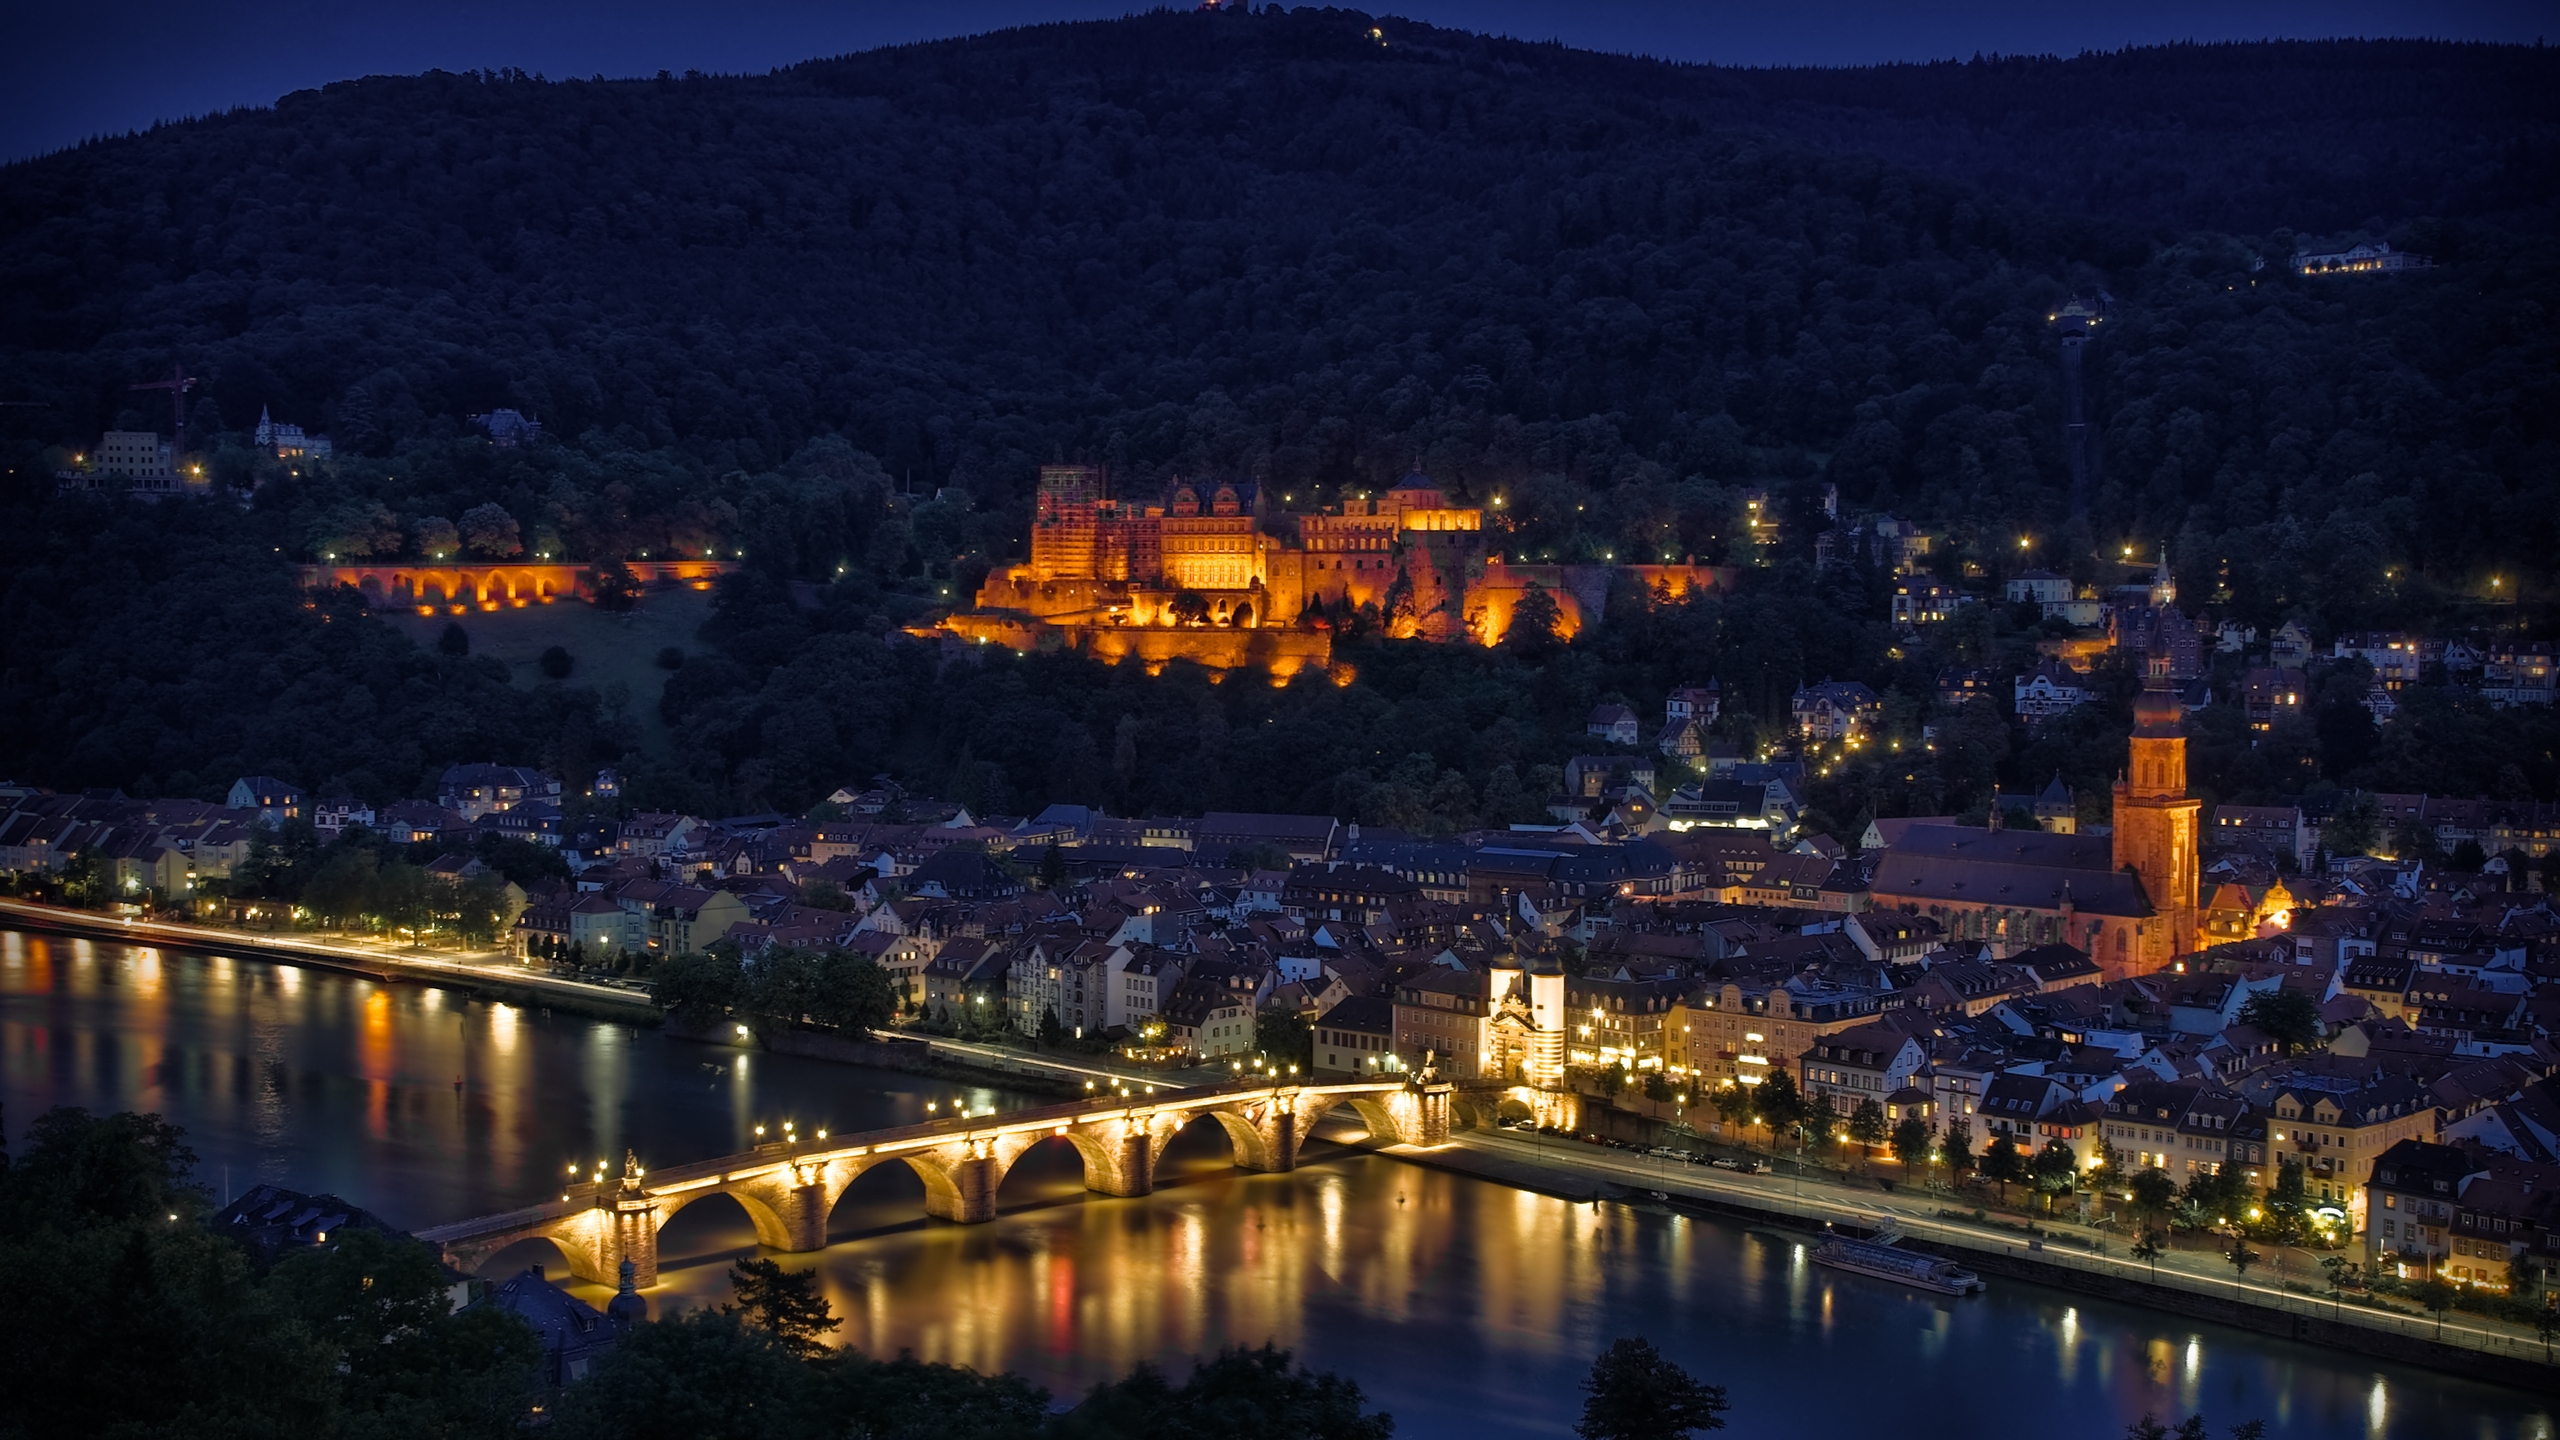 Heidelberg Night Lights for 2560x1440 HDTV resolution